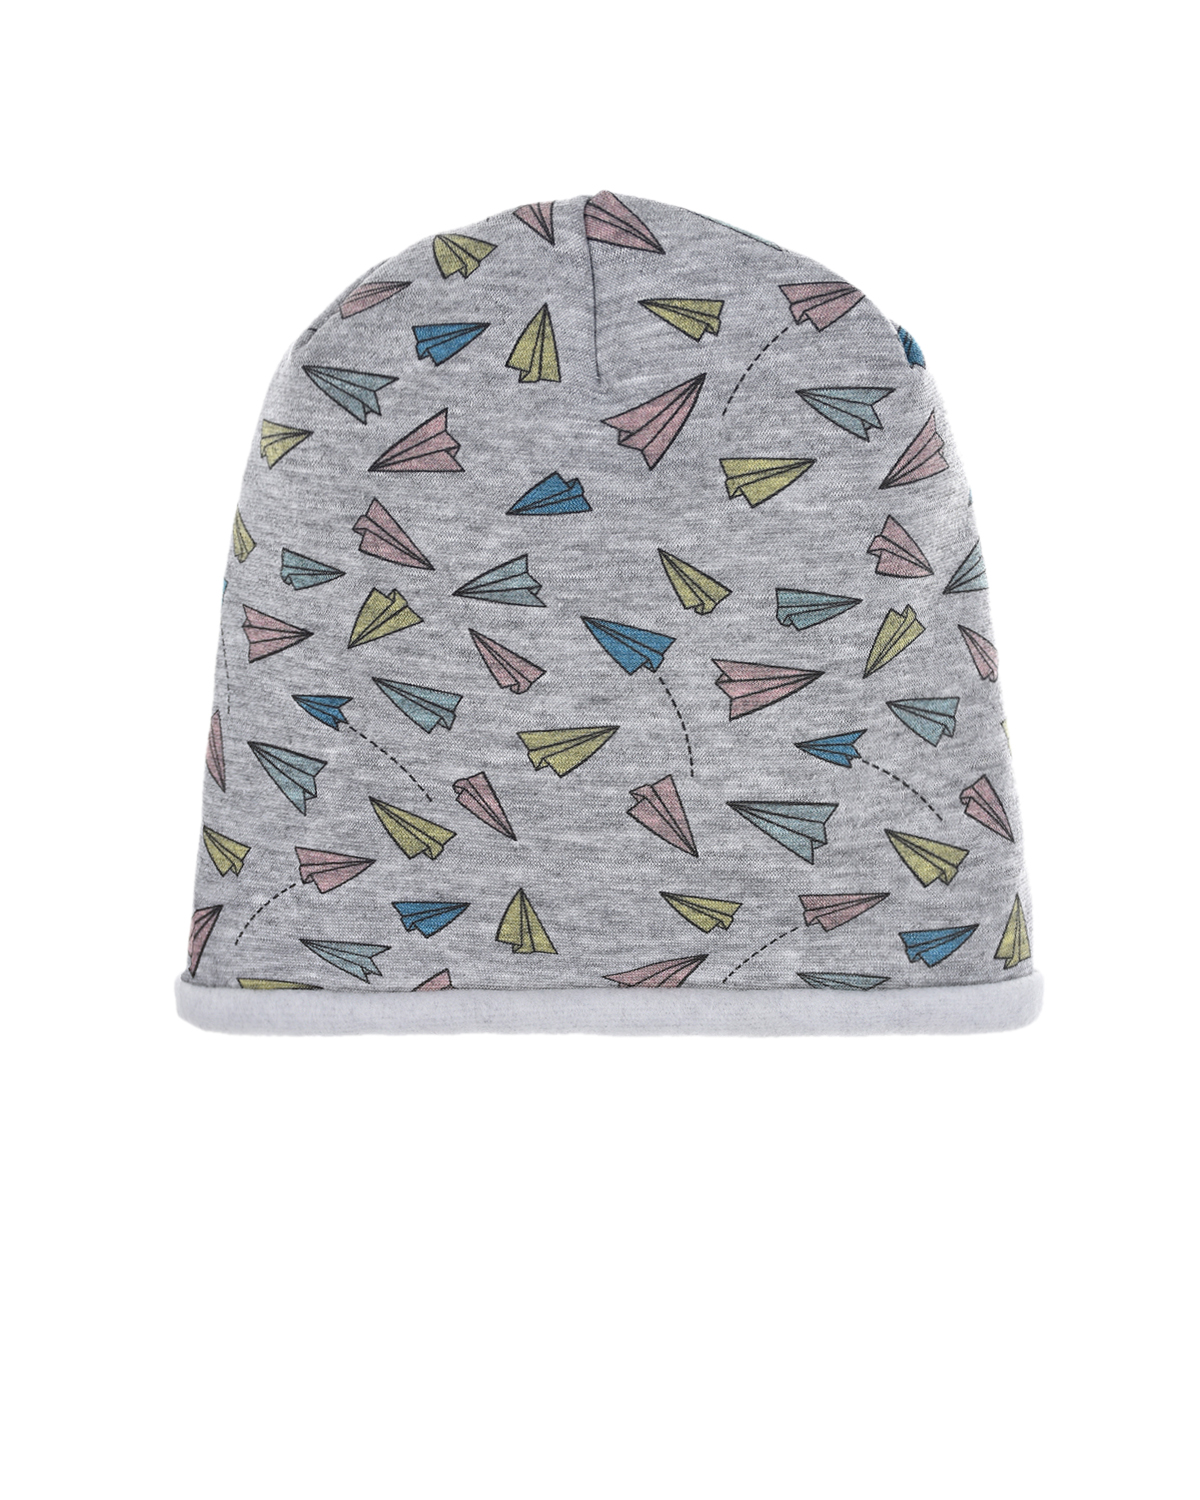 Трикотажная шапка с принтом "Бумажные самолетики" Catya детская, размер 49, цвет серый - фото 1